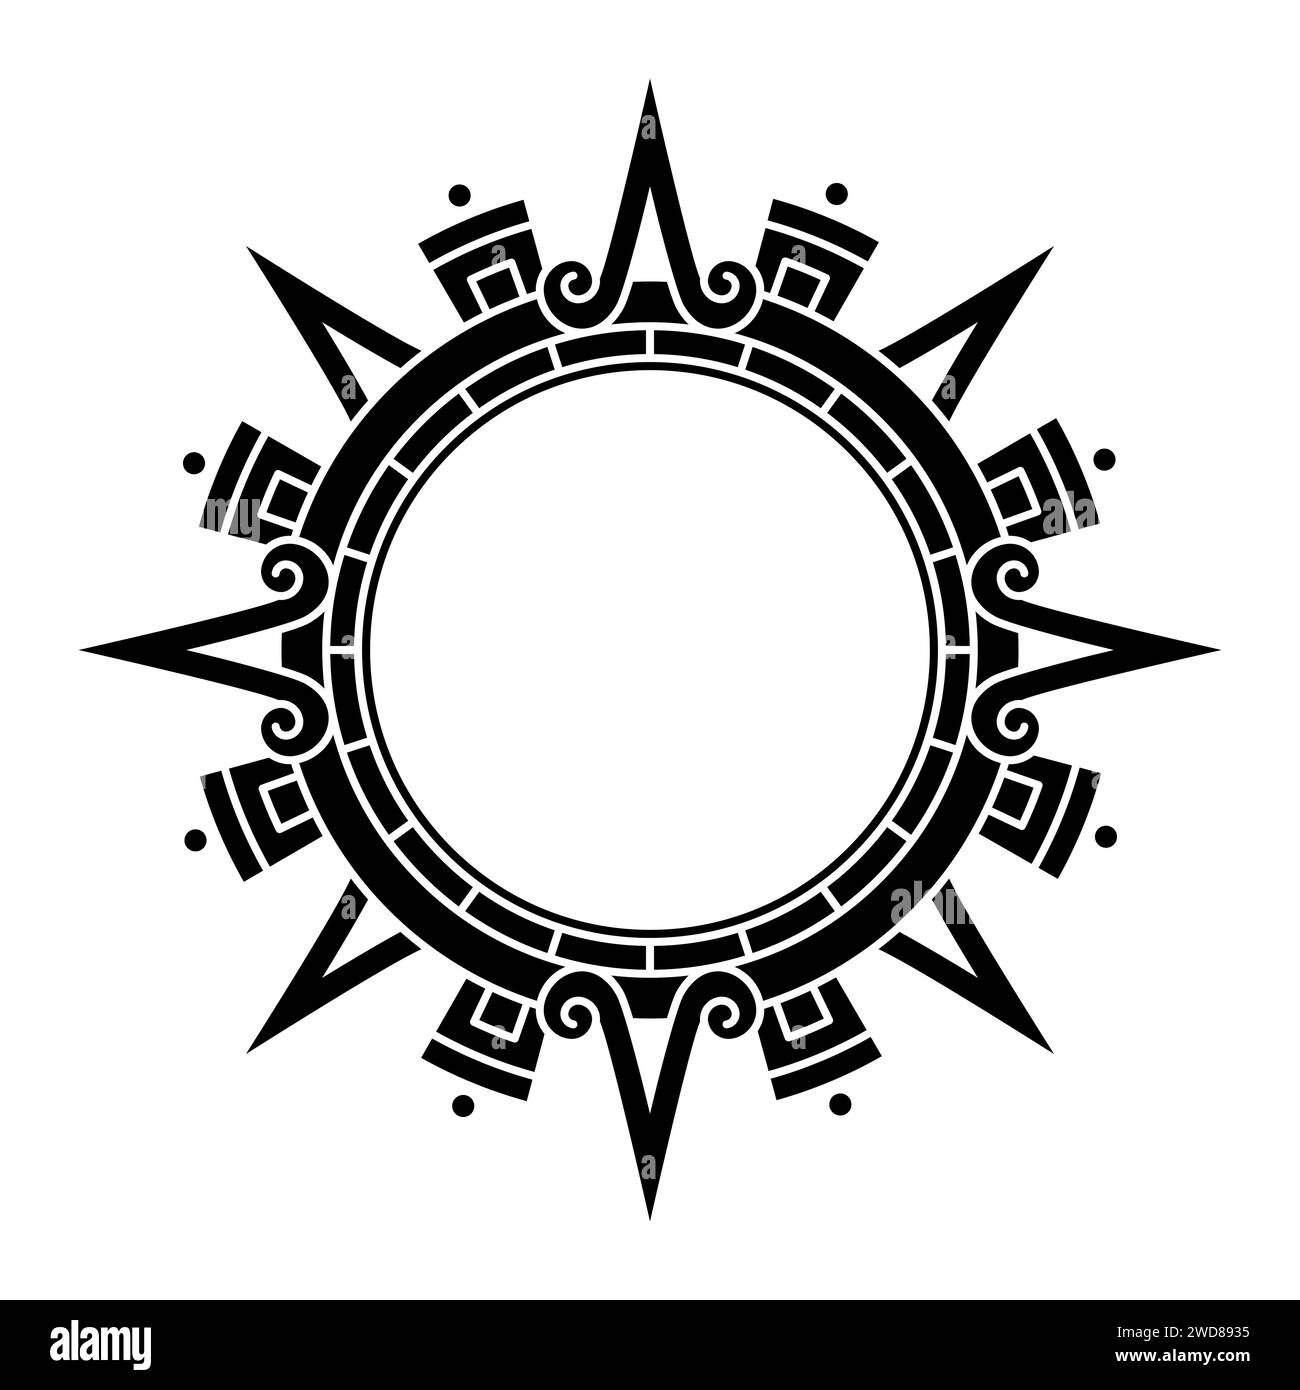 Disco solare azteco, simbolo del sole e diadema, che rappresenta la divinità solare azteca Tonatiuh. Frecce principali o raggi solari che puntano nelle direzioni cardinali. Foto Stock